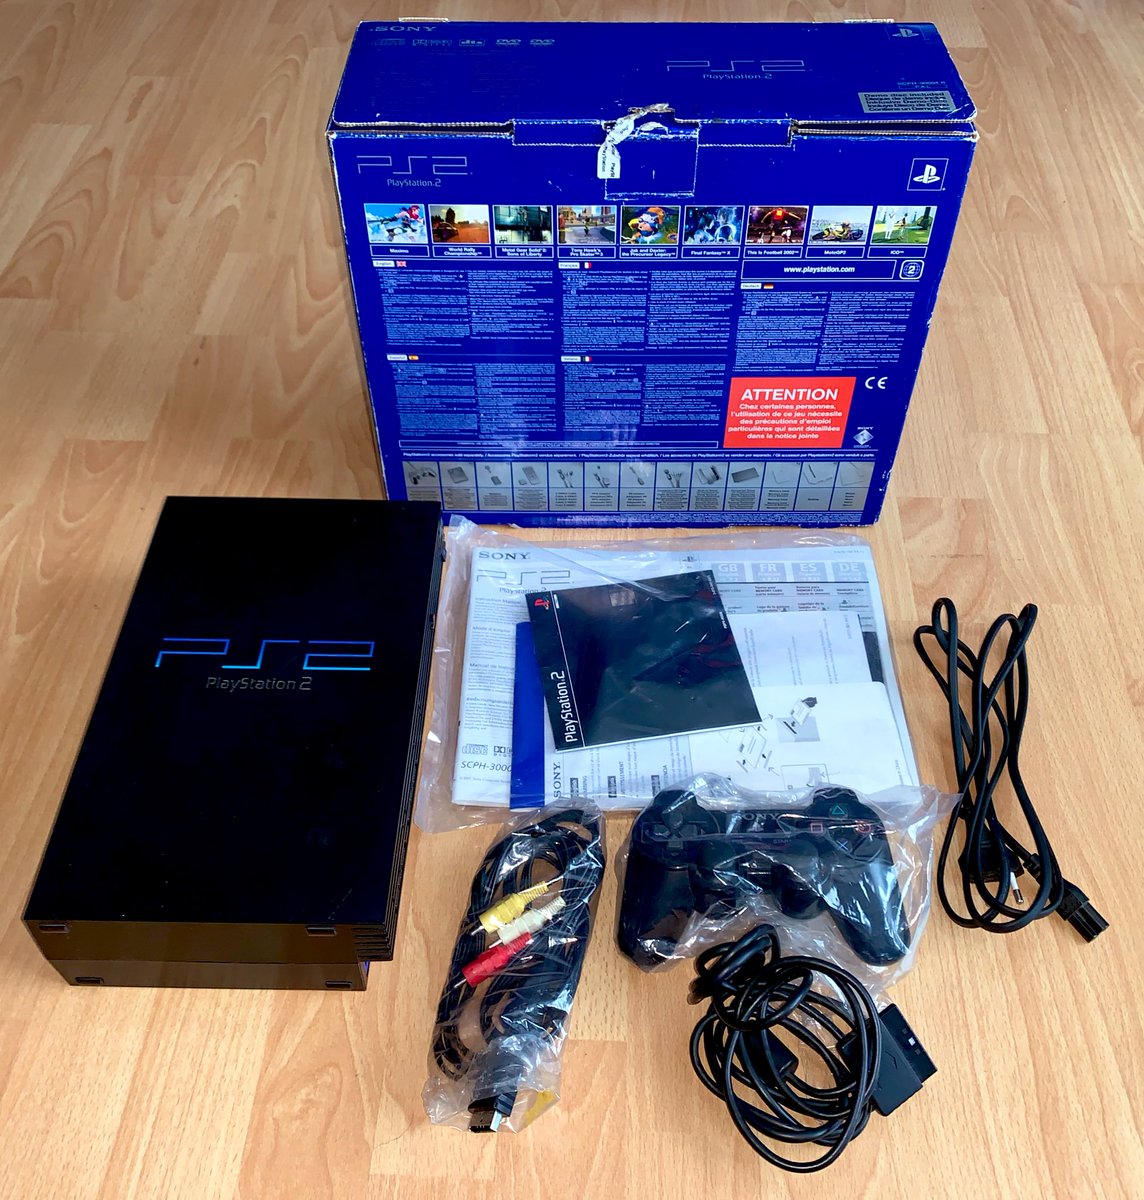 Sony PlayStation 2 (2000) La PS2 fat historique, noire dans sa boîte bleue ! Ce n’est pas la première série mais presque : celle-ci, ultra complète, est de 2001 et se porte toujours comme un charme. À noter que le mini-DVD média est toujours scellé et n’a jamais été utilisé…